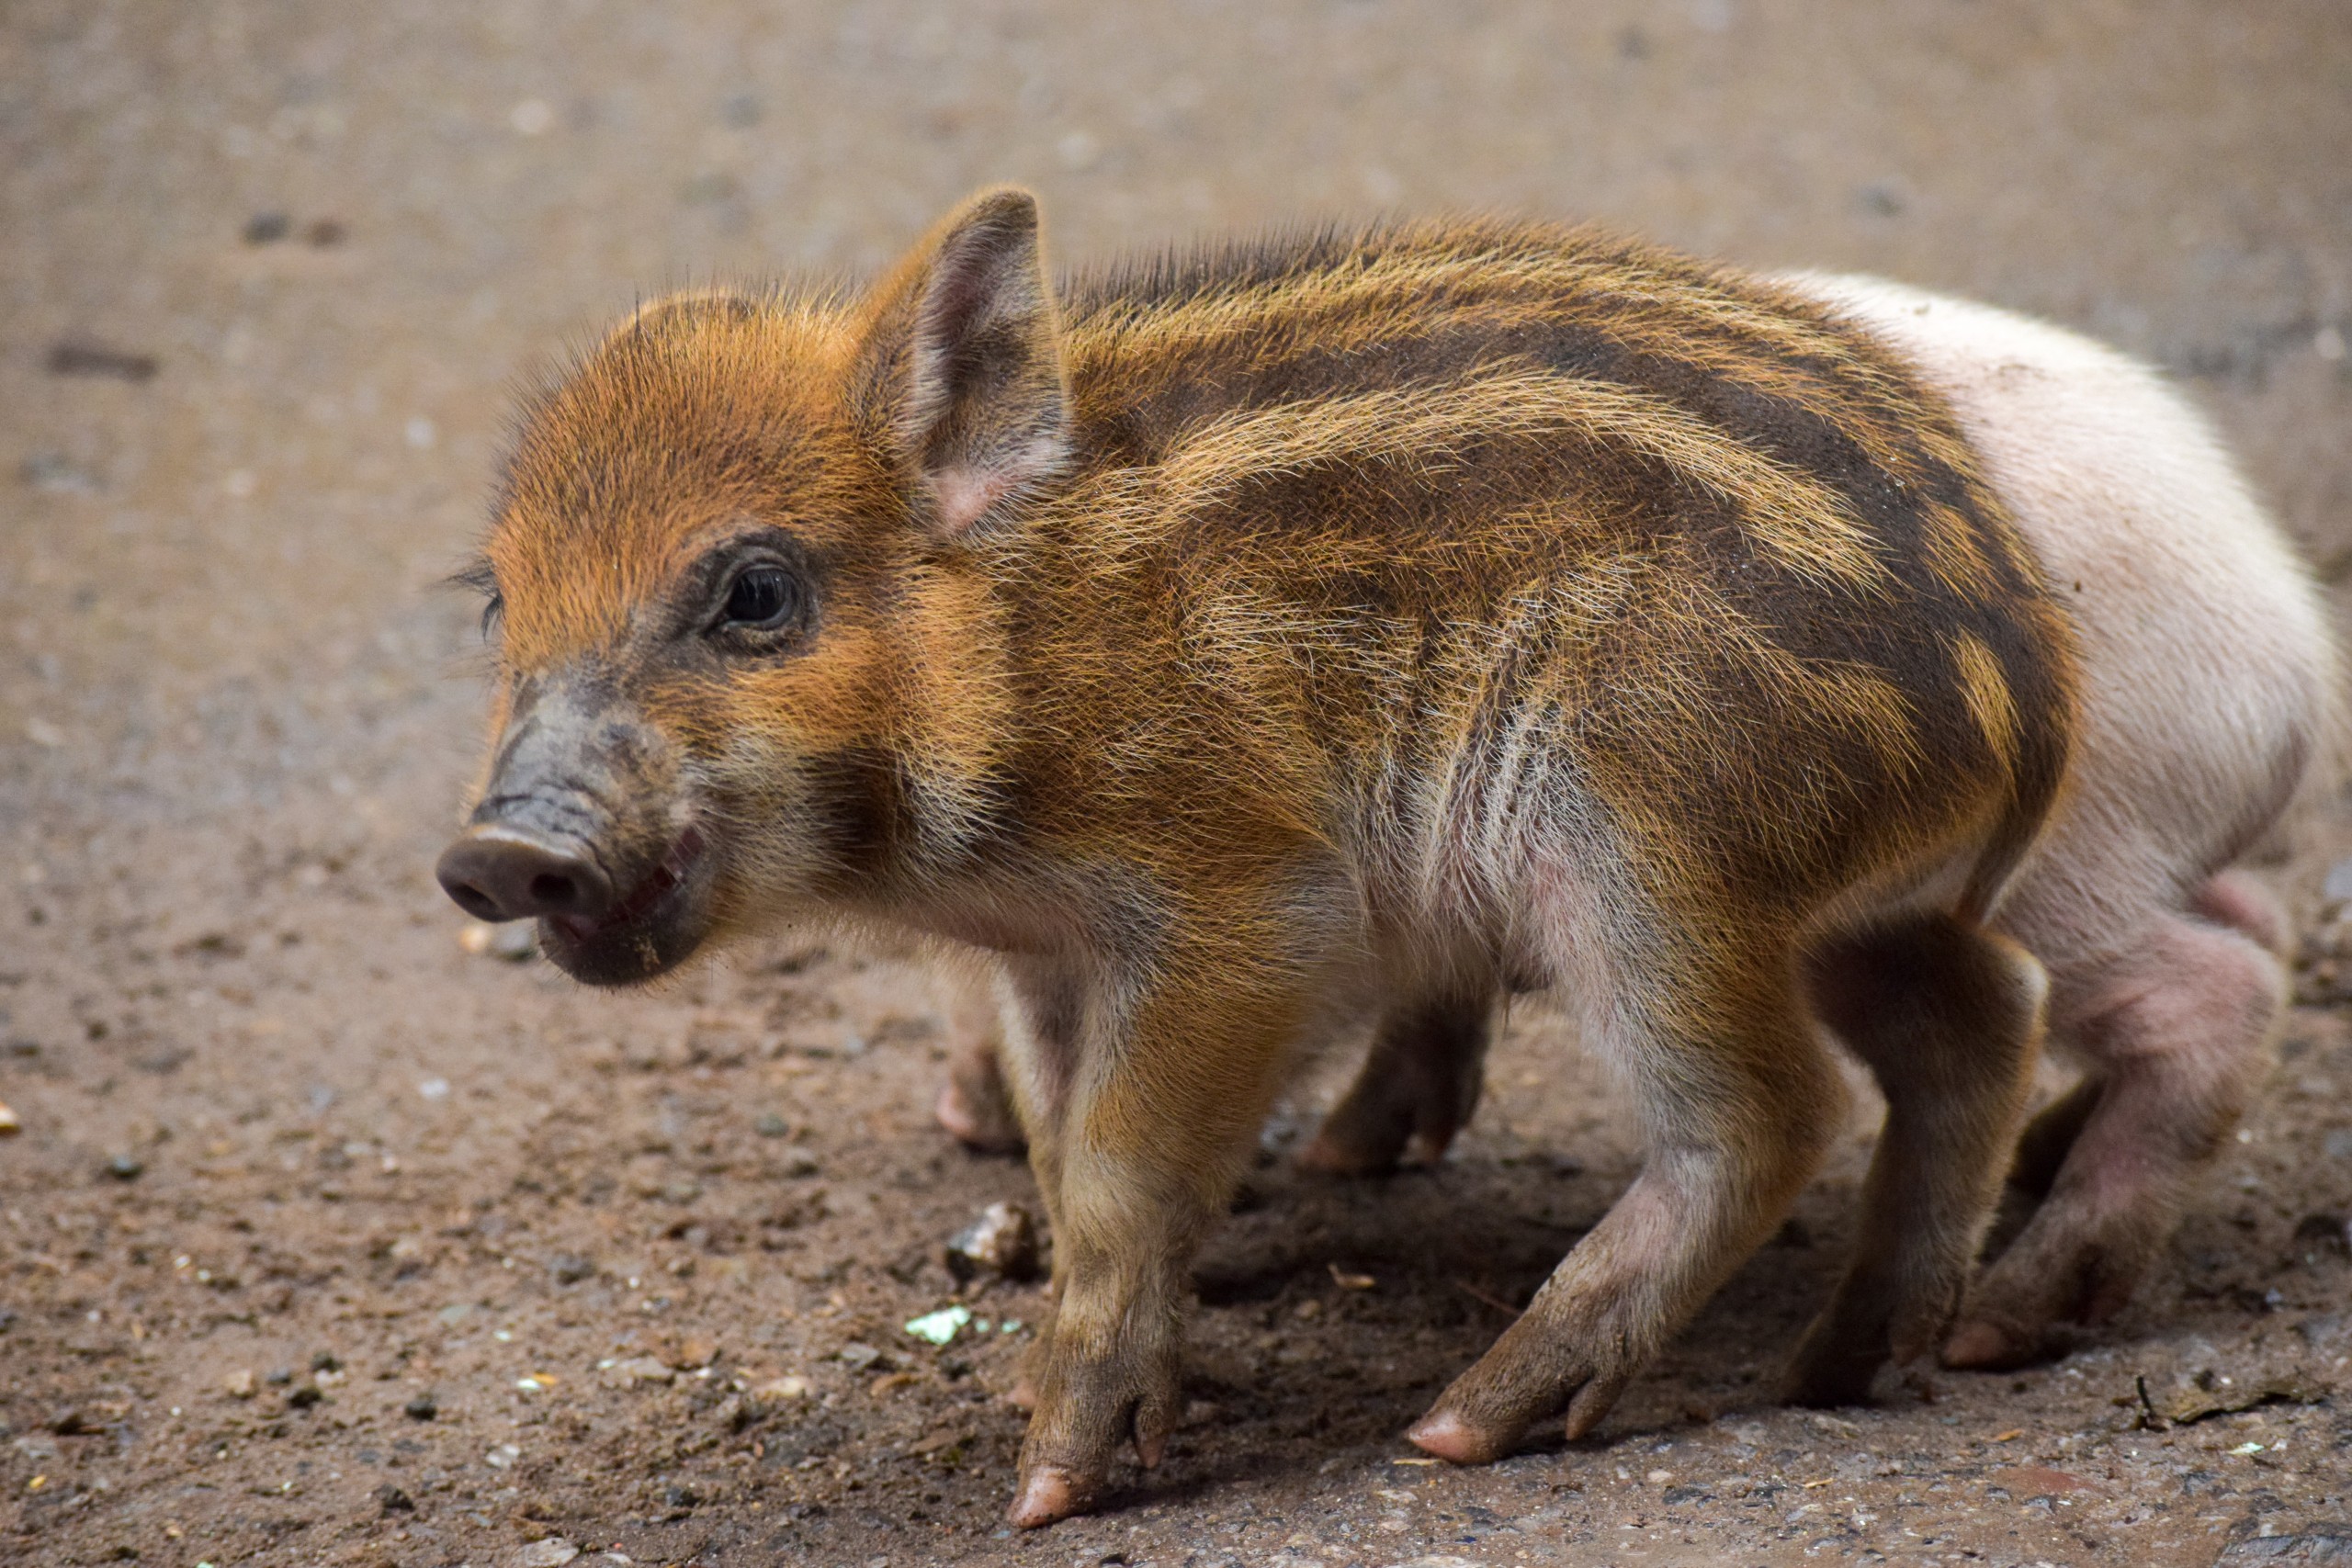 A cute little piglet